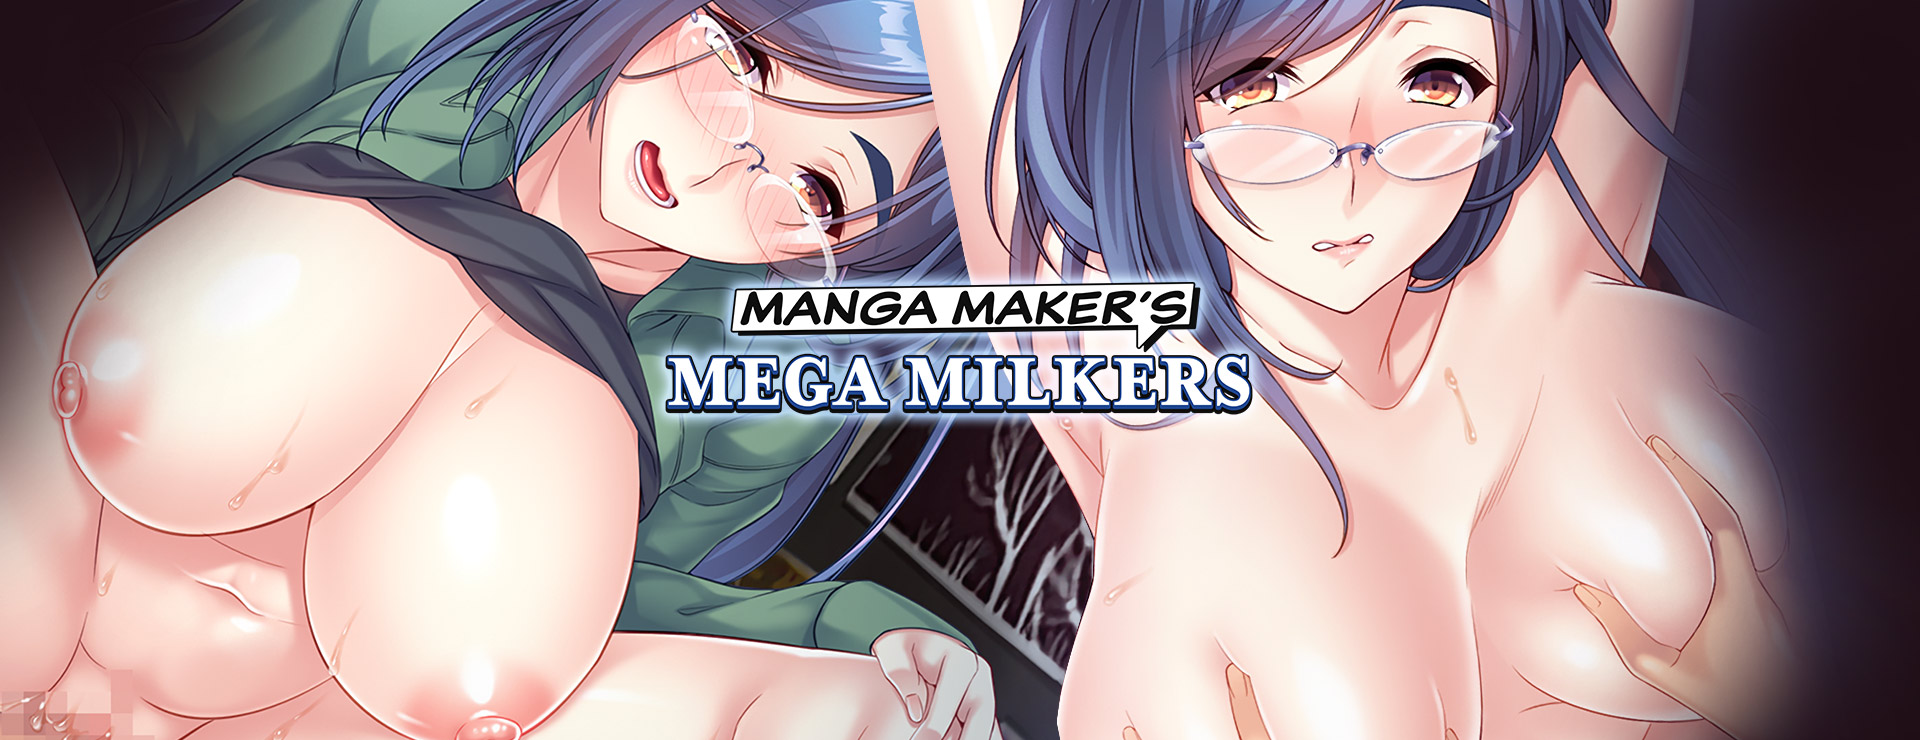 Manga Maker's Mega Milkers - Roman Visuel Jeu